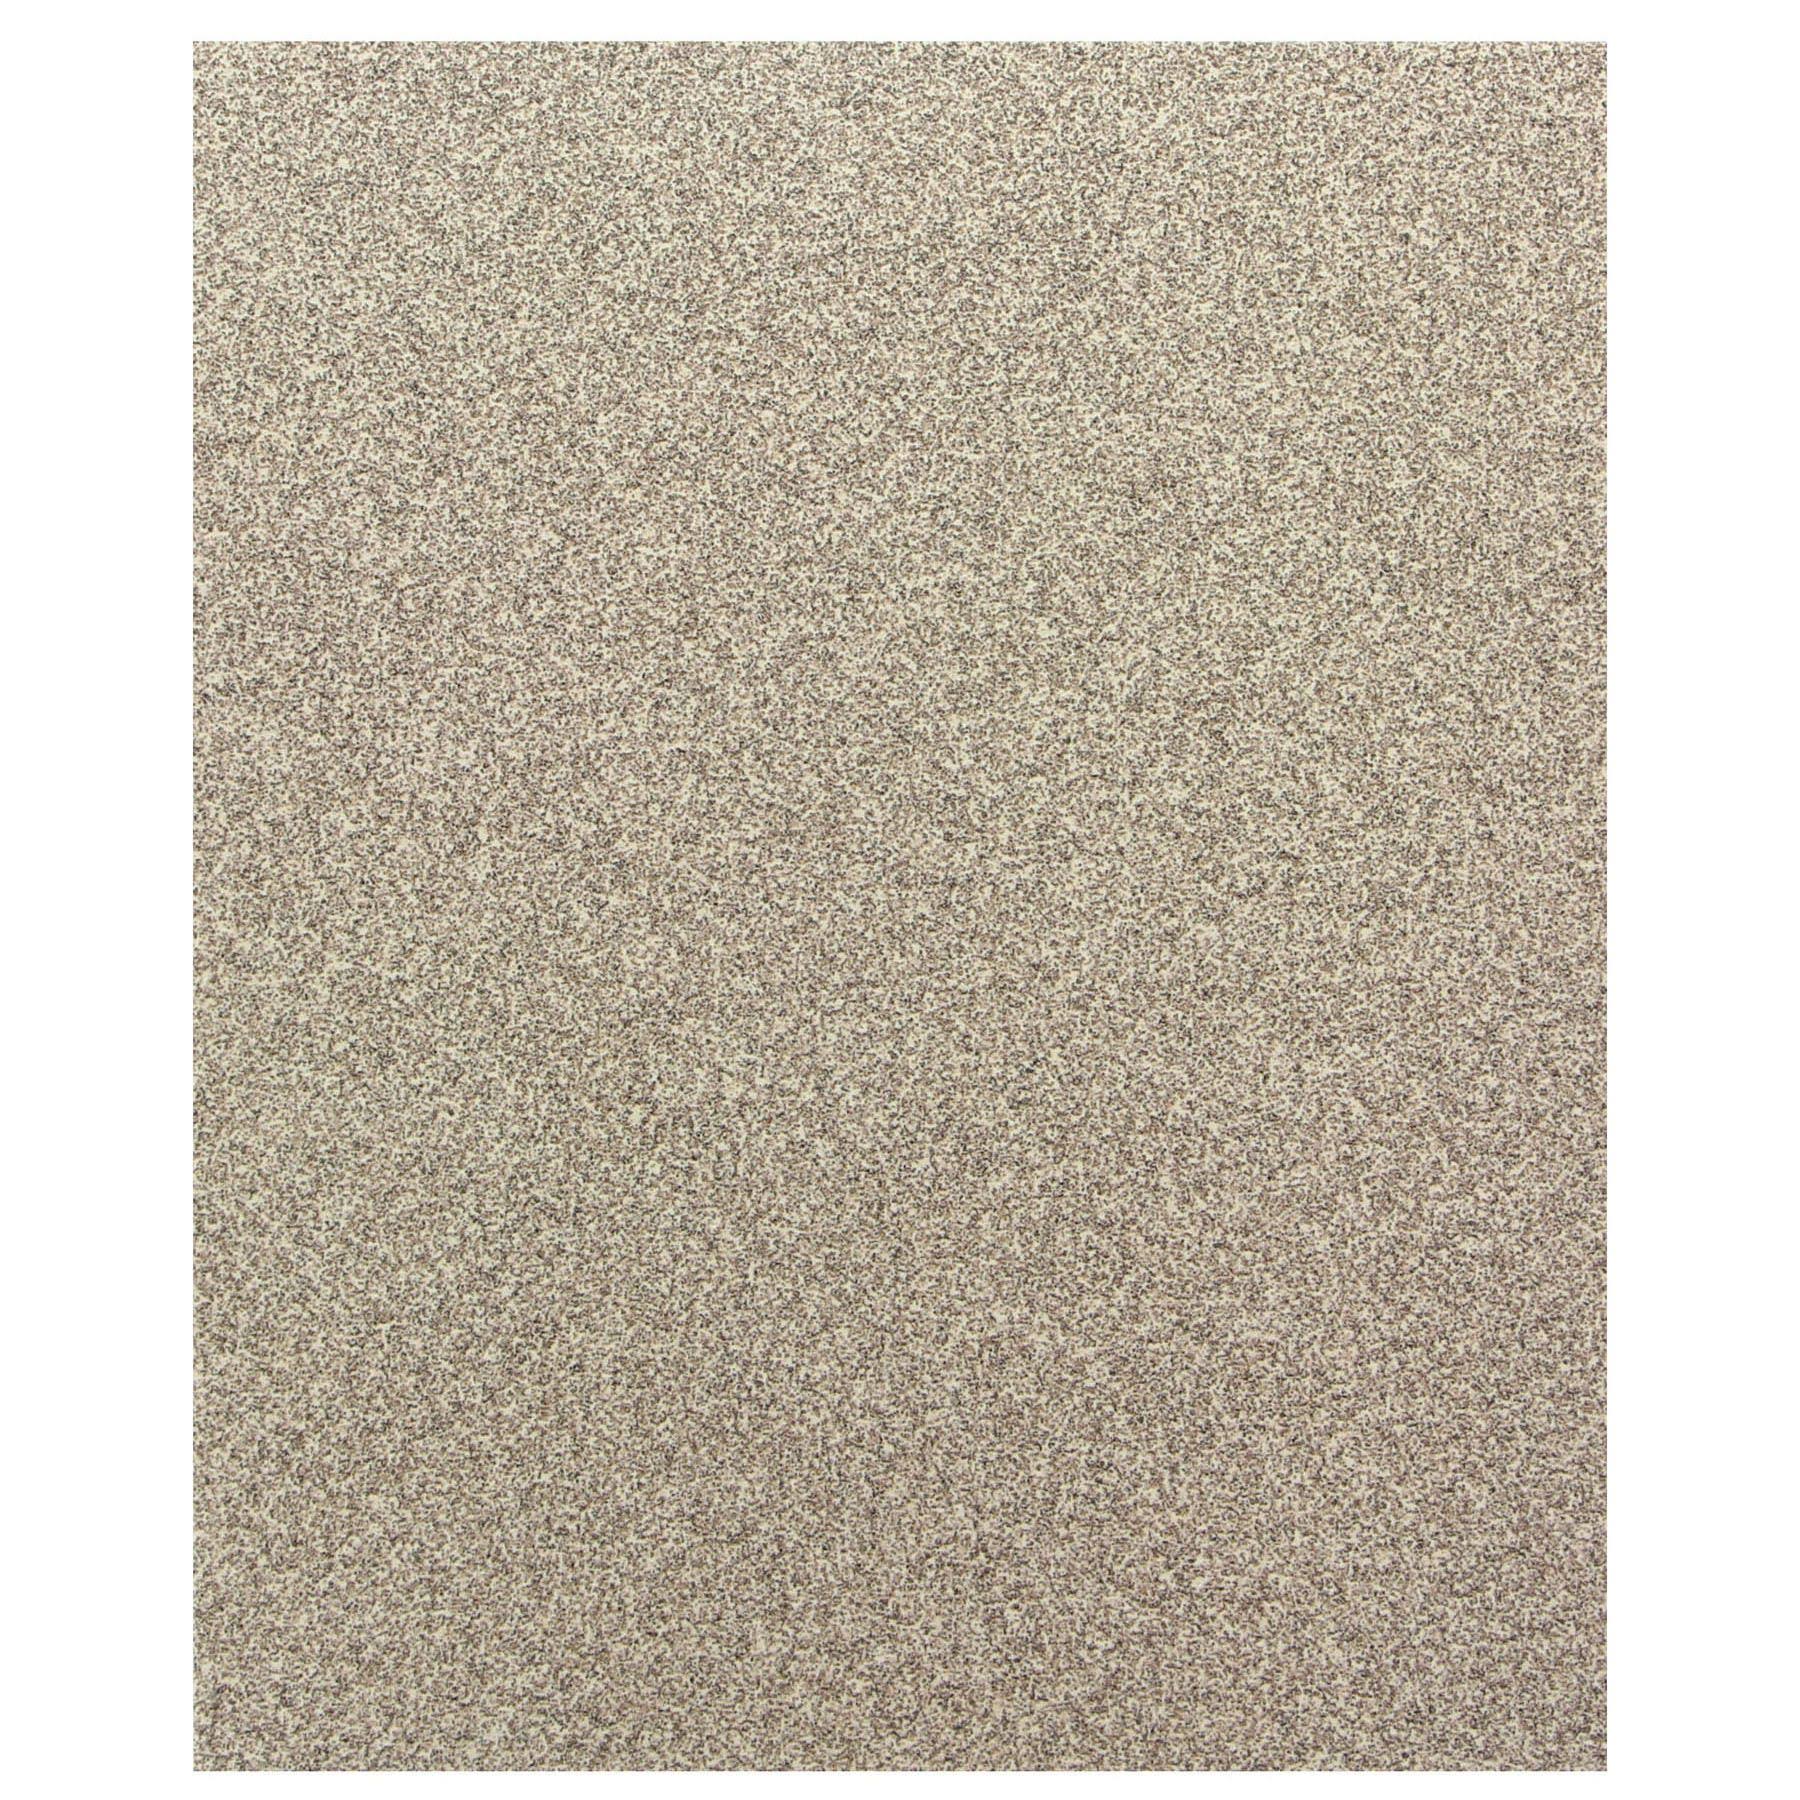 Multi-surface sandpaper, 50 grit, bulk